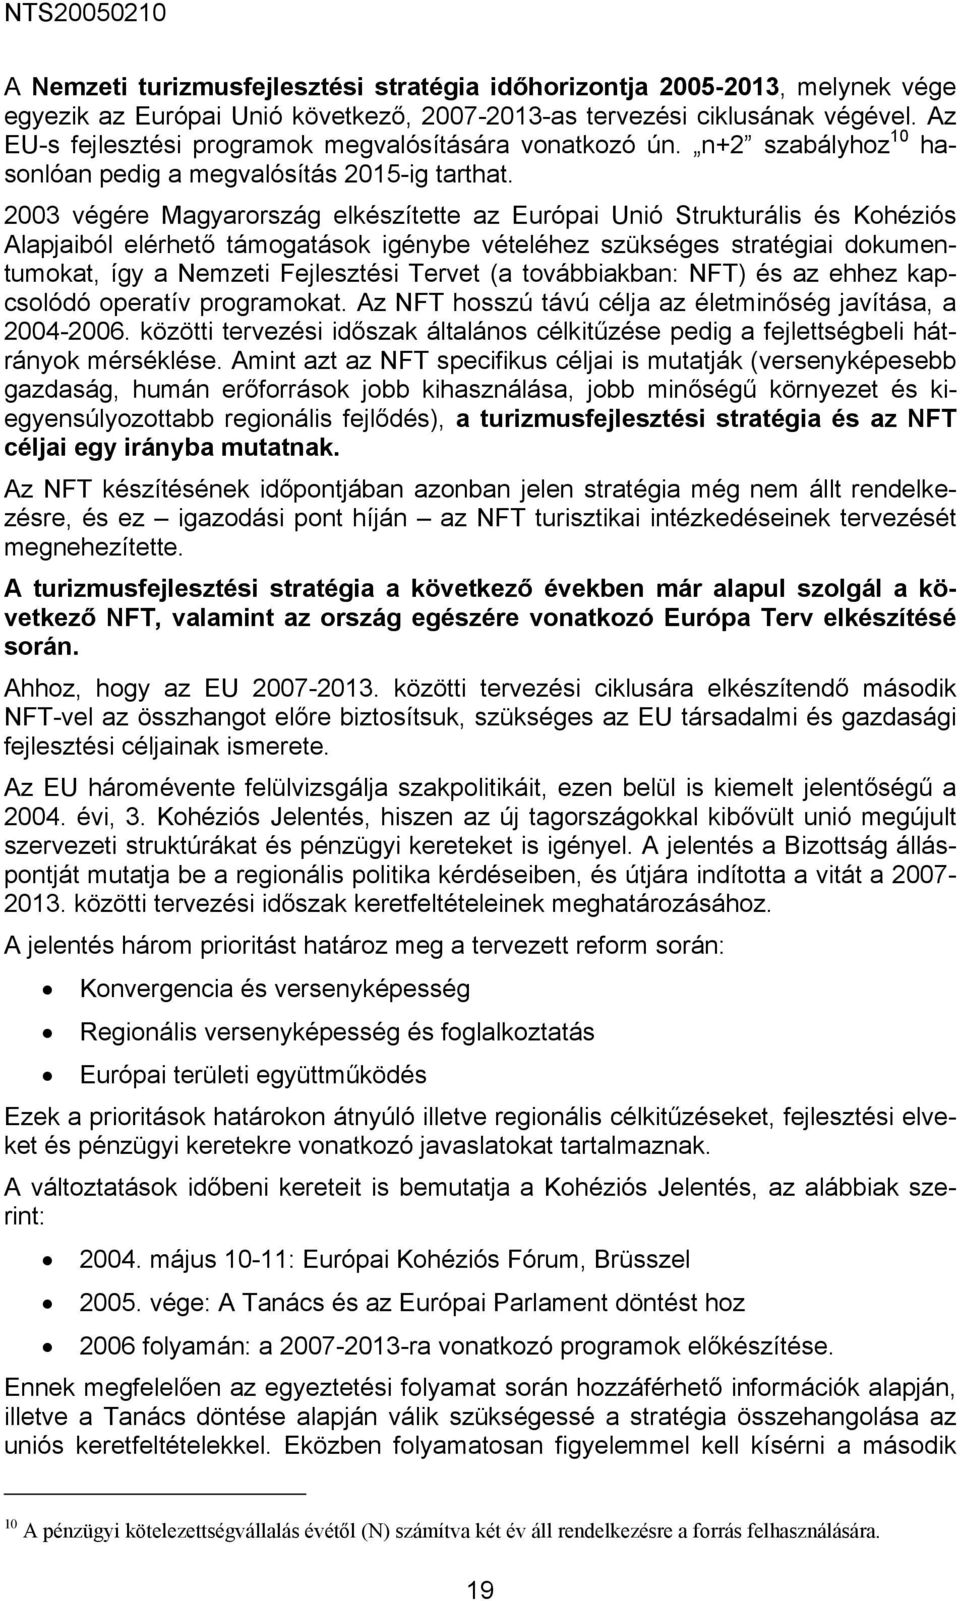 2003 végére Magyarország elkészítette az Európai Unió Strukturális és Kohéziós Alapjaiból elérhető támogatások igénybe vételéhez szükséges stratégiai dokumentumokat, így a Nemzeti Fejlesztési Tervet